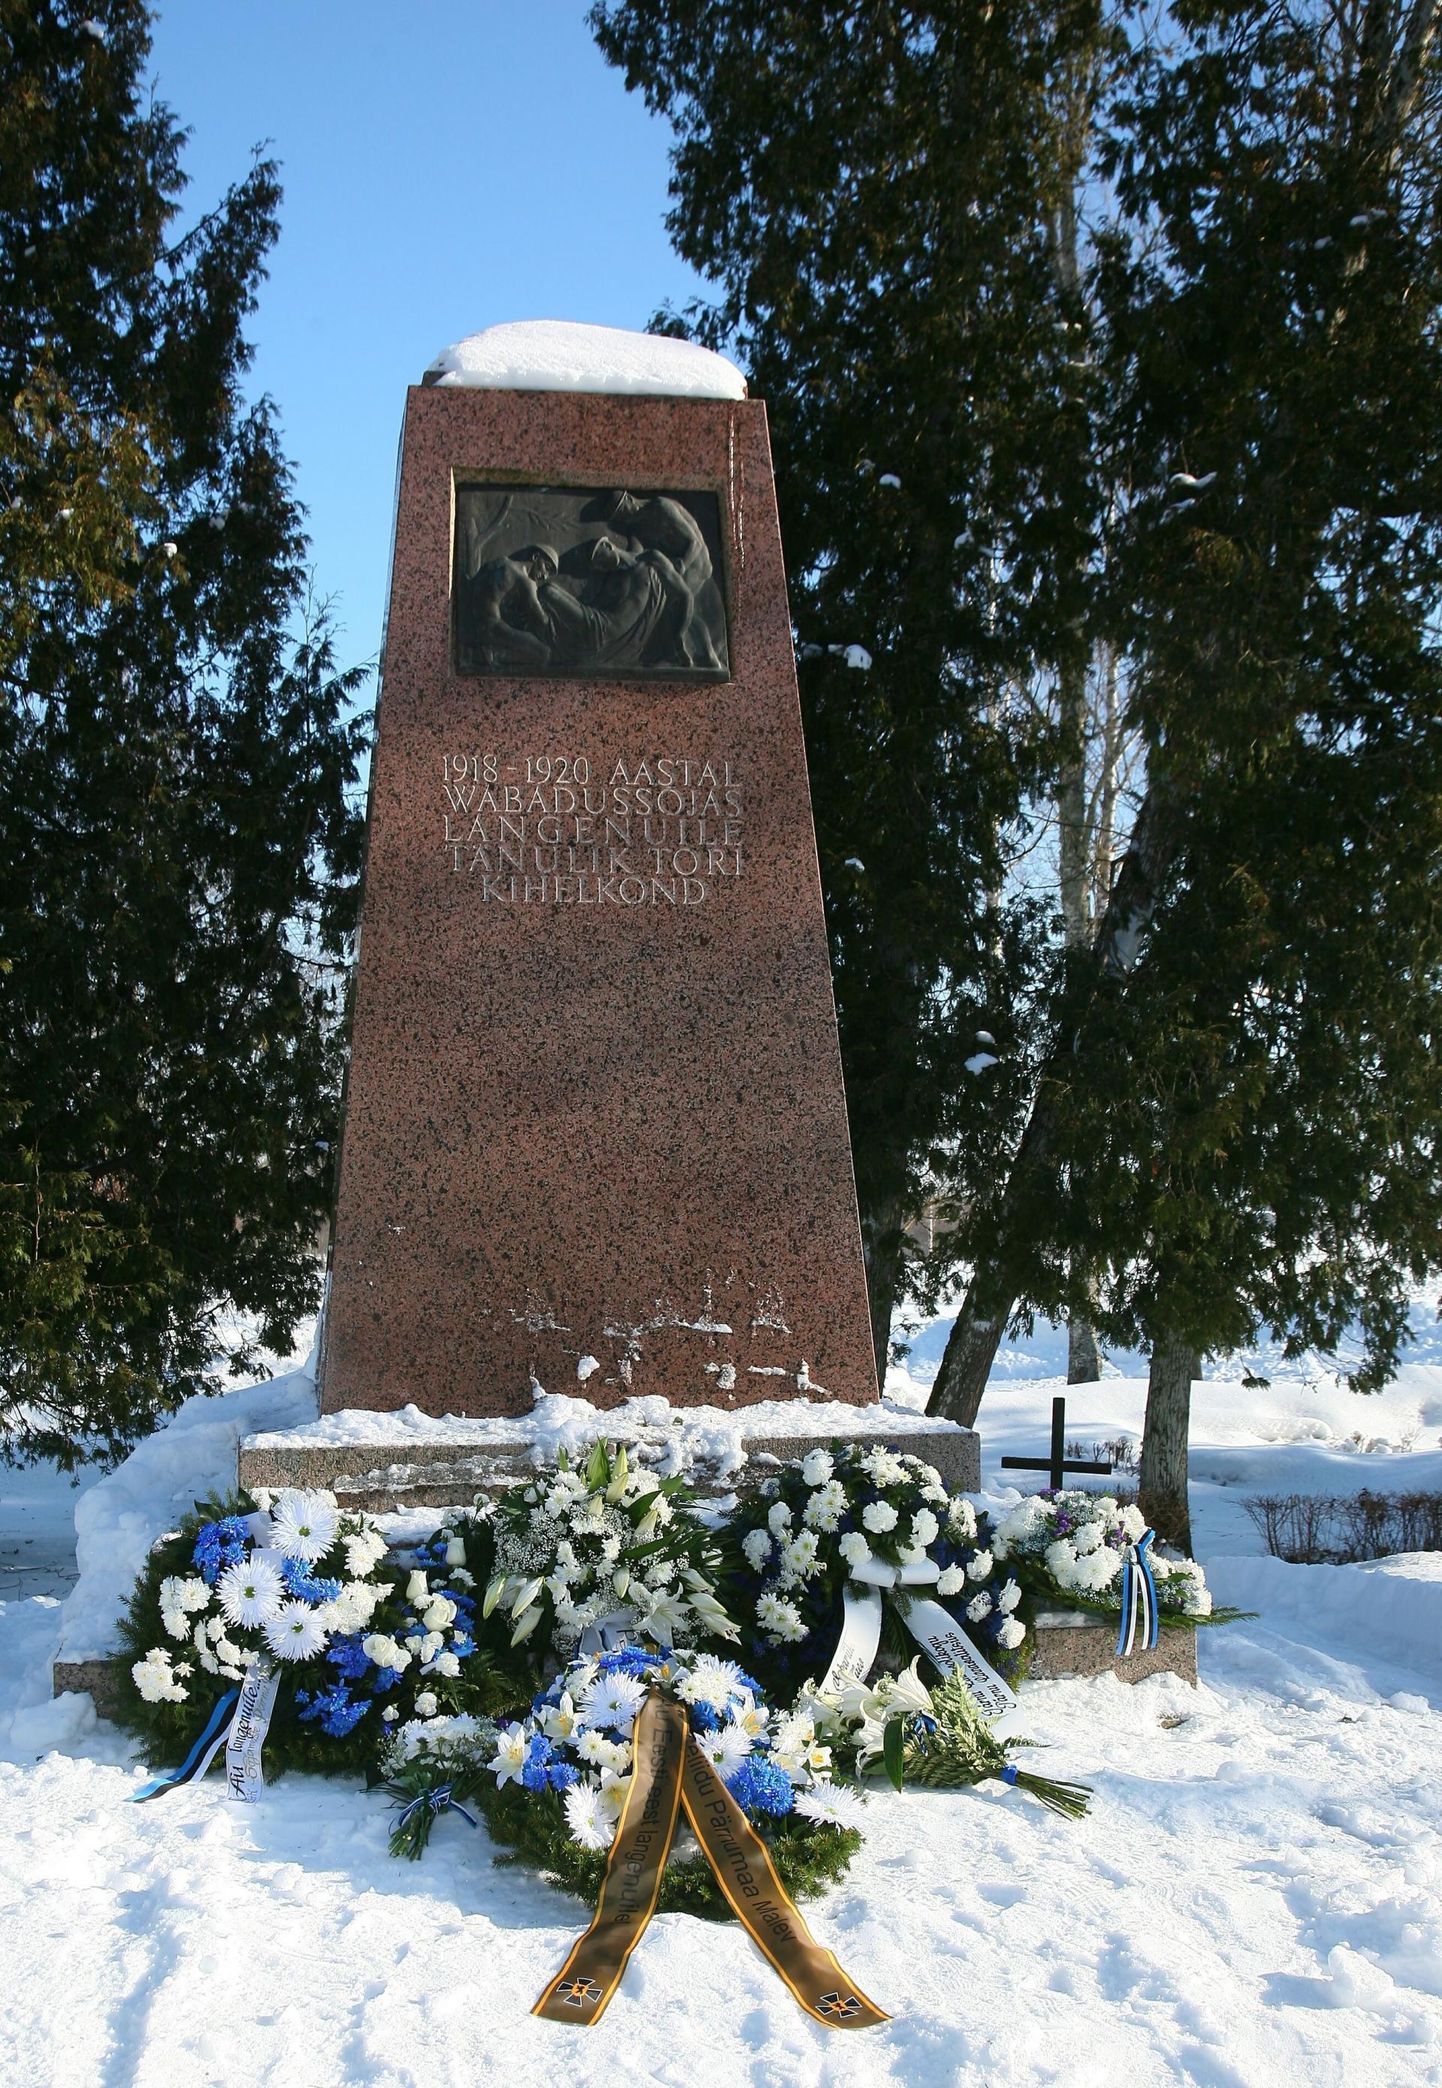 Tori vabadussõja mälestussammas ja seda ehtiv pronksbareljeef, mida Nikolai Kõlvart oma kodus varjas.